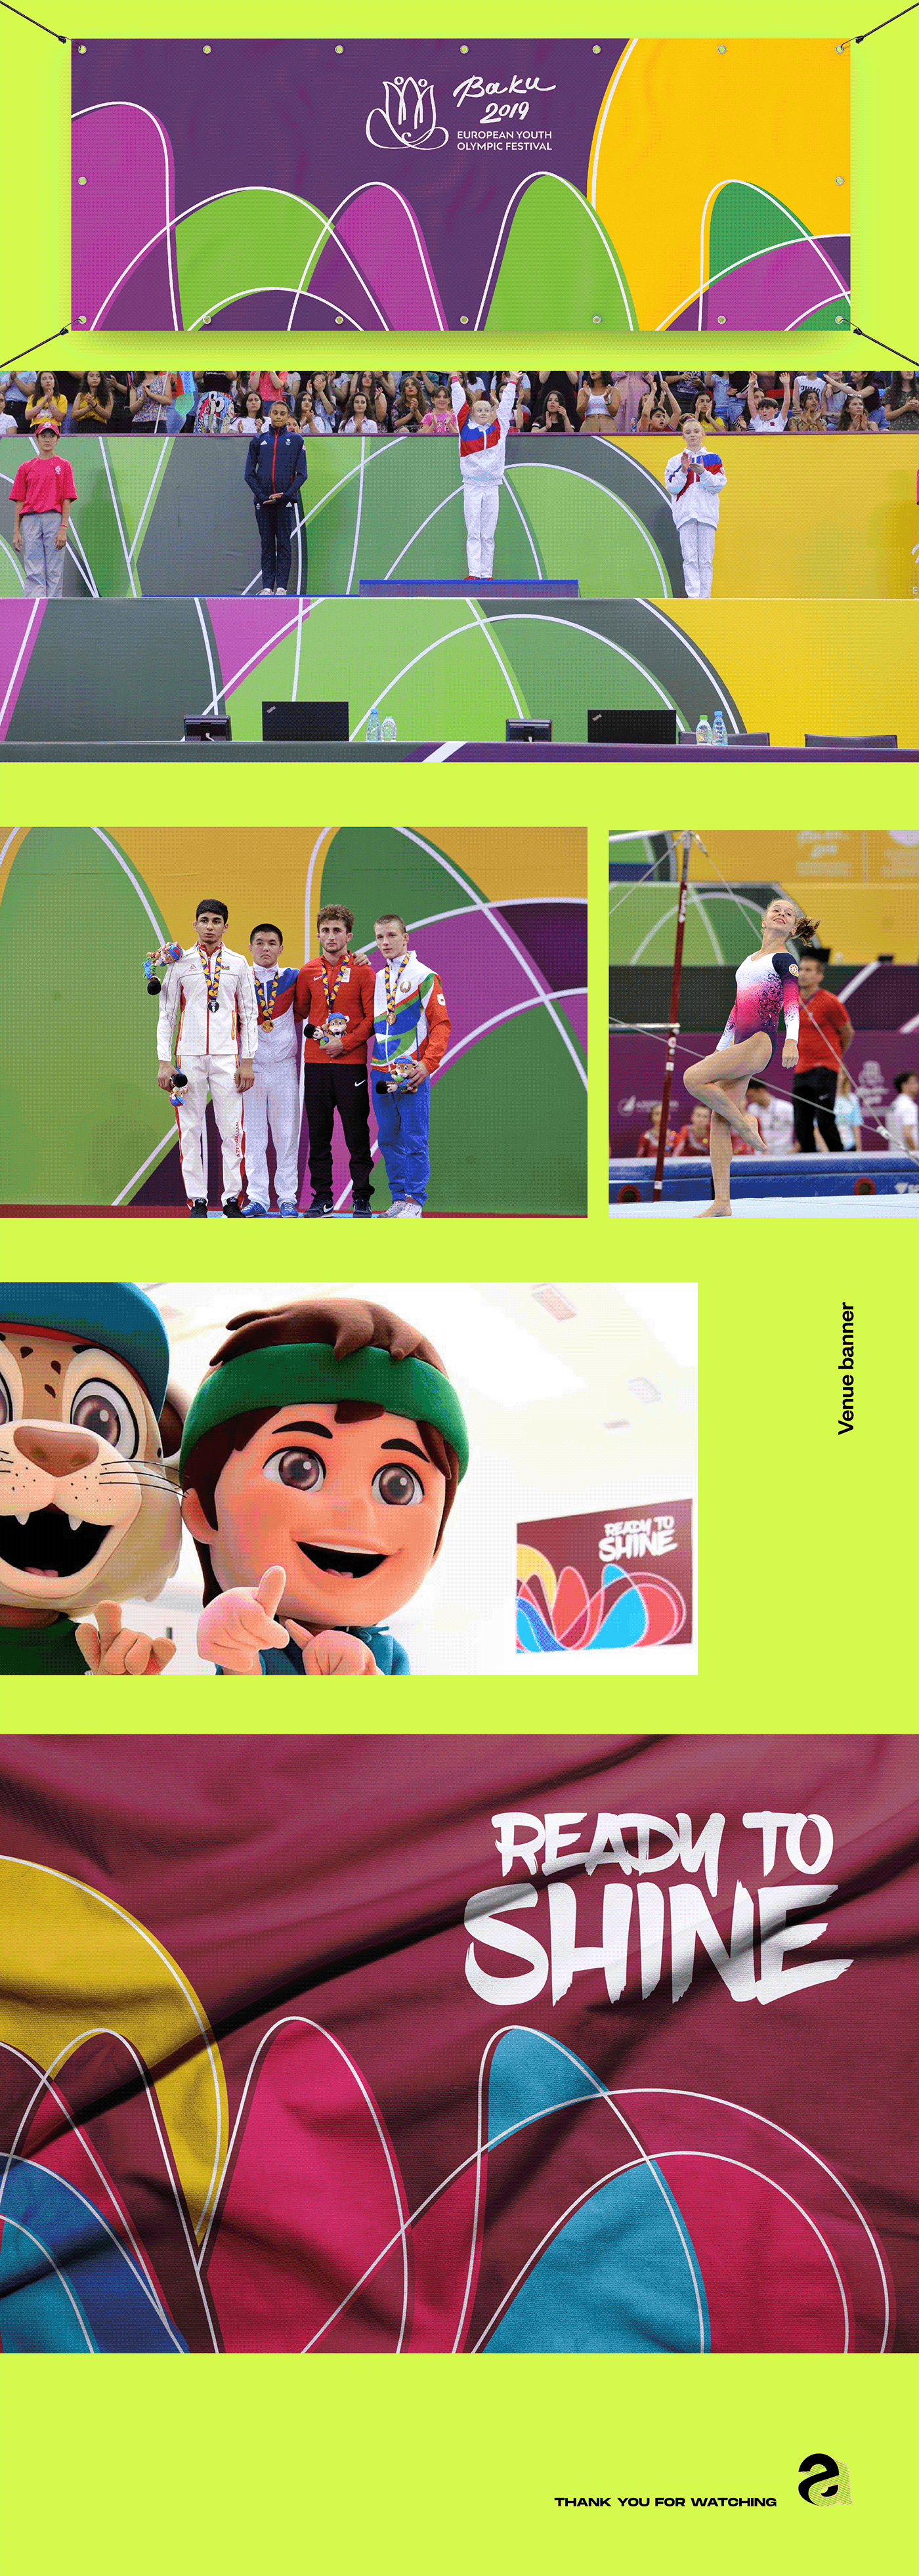 athletics Baku2019 festival Games identity logo olympic olympic festival olympicgames sport